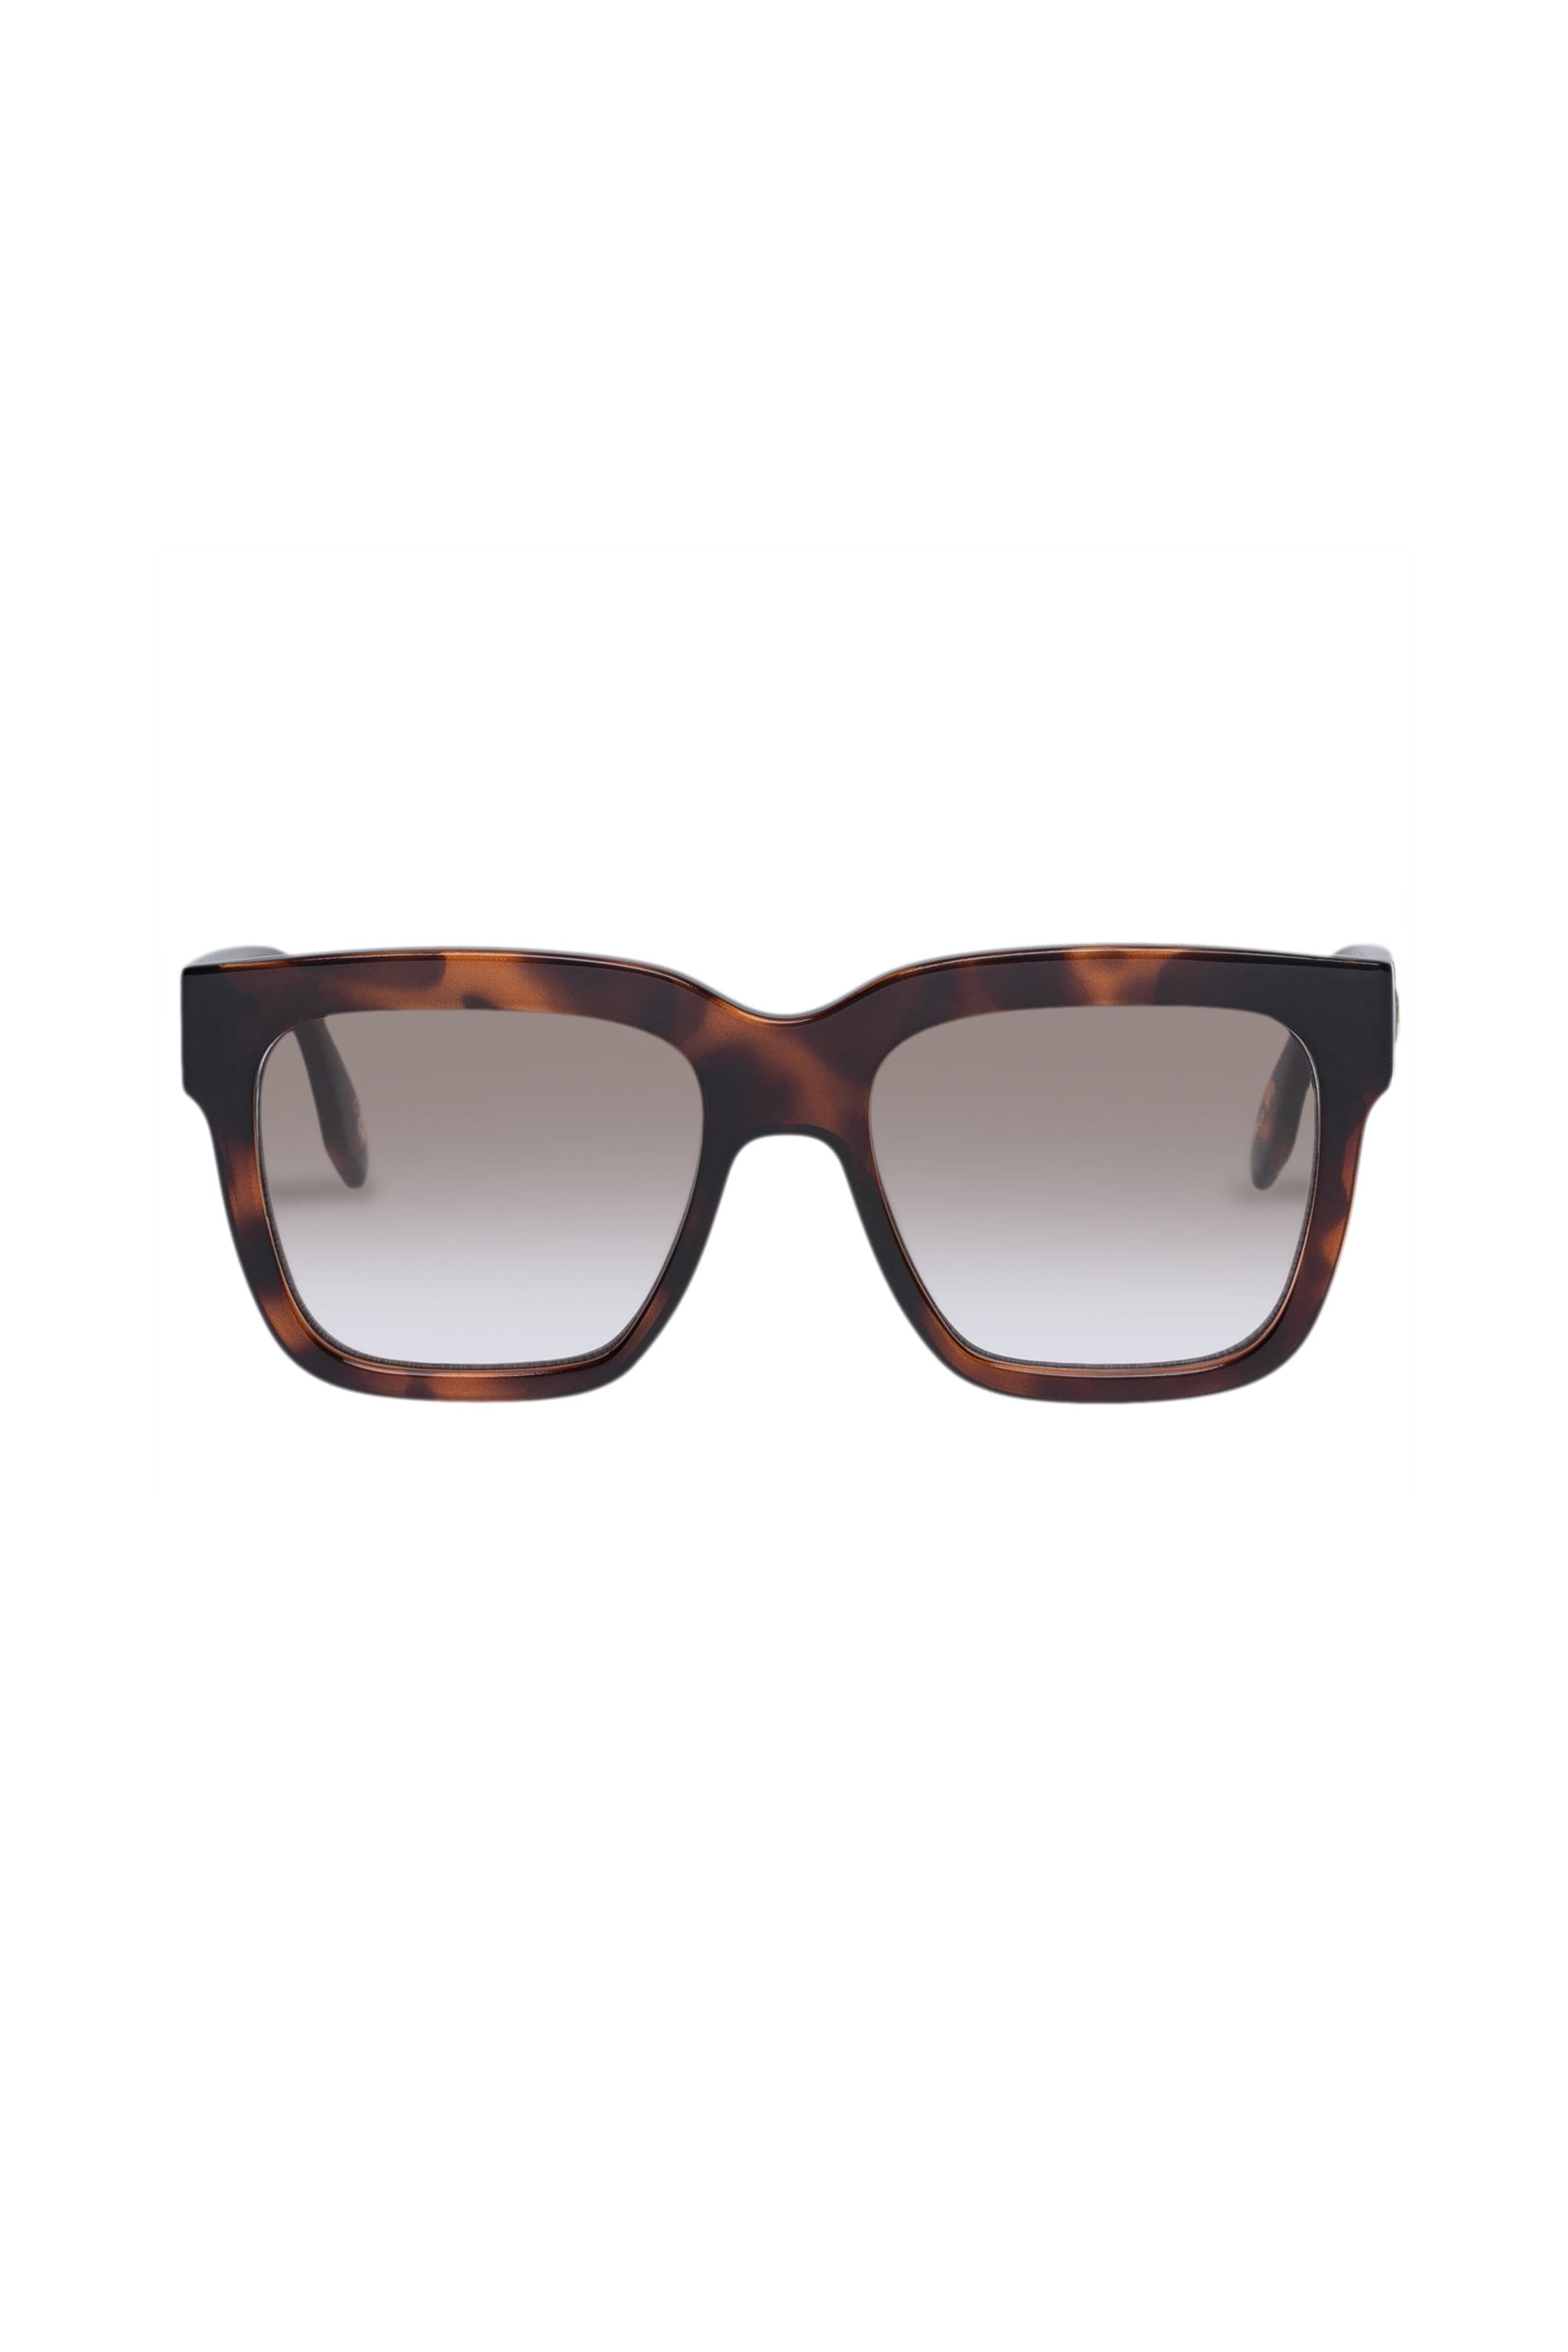 Le Specs Tradeoff Sunglasses - Dark Tort // Le Sustain - RUM Amsterdam